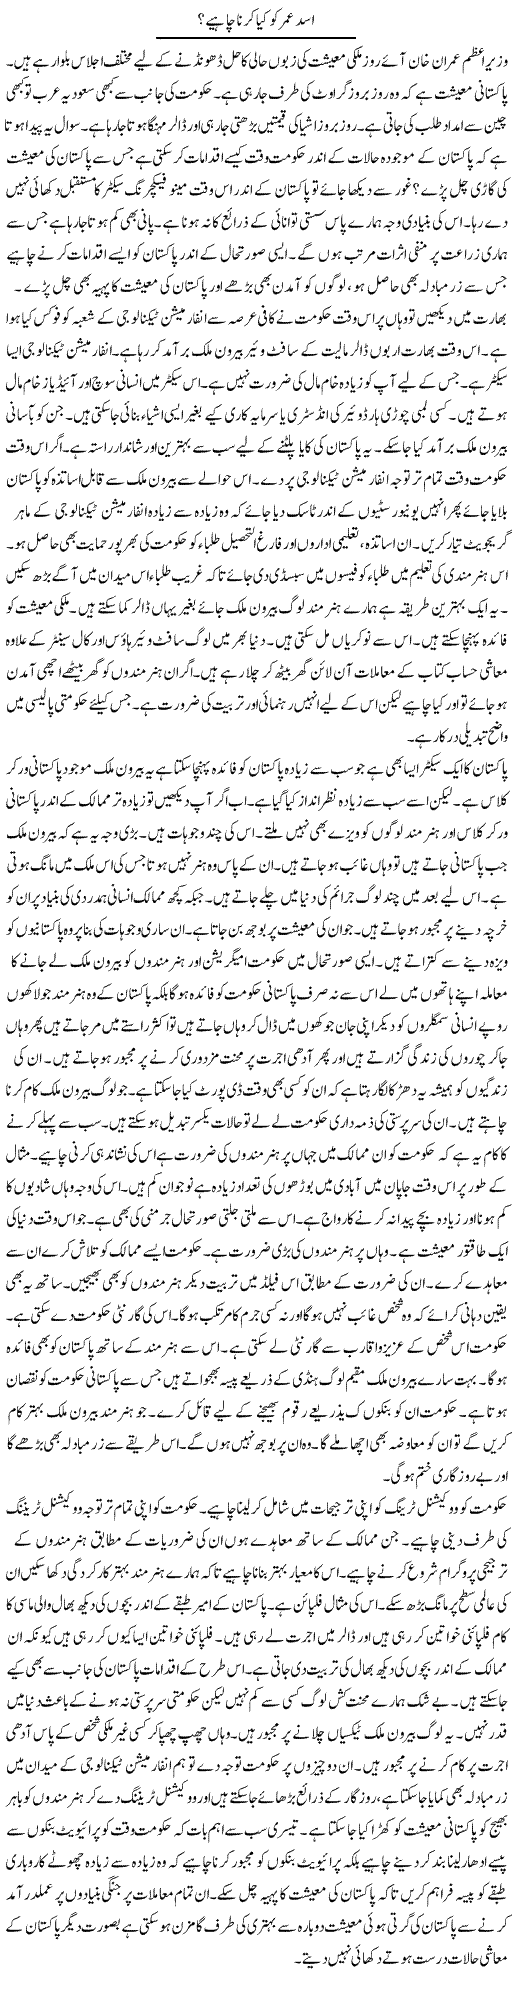 Asad Umar Ko Kya Karna Chahiye? | Syed Zeeshan Haider | Daily Urdu Columns